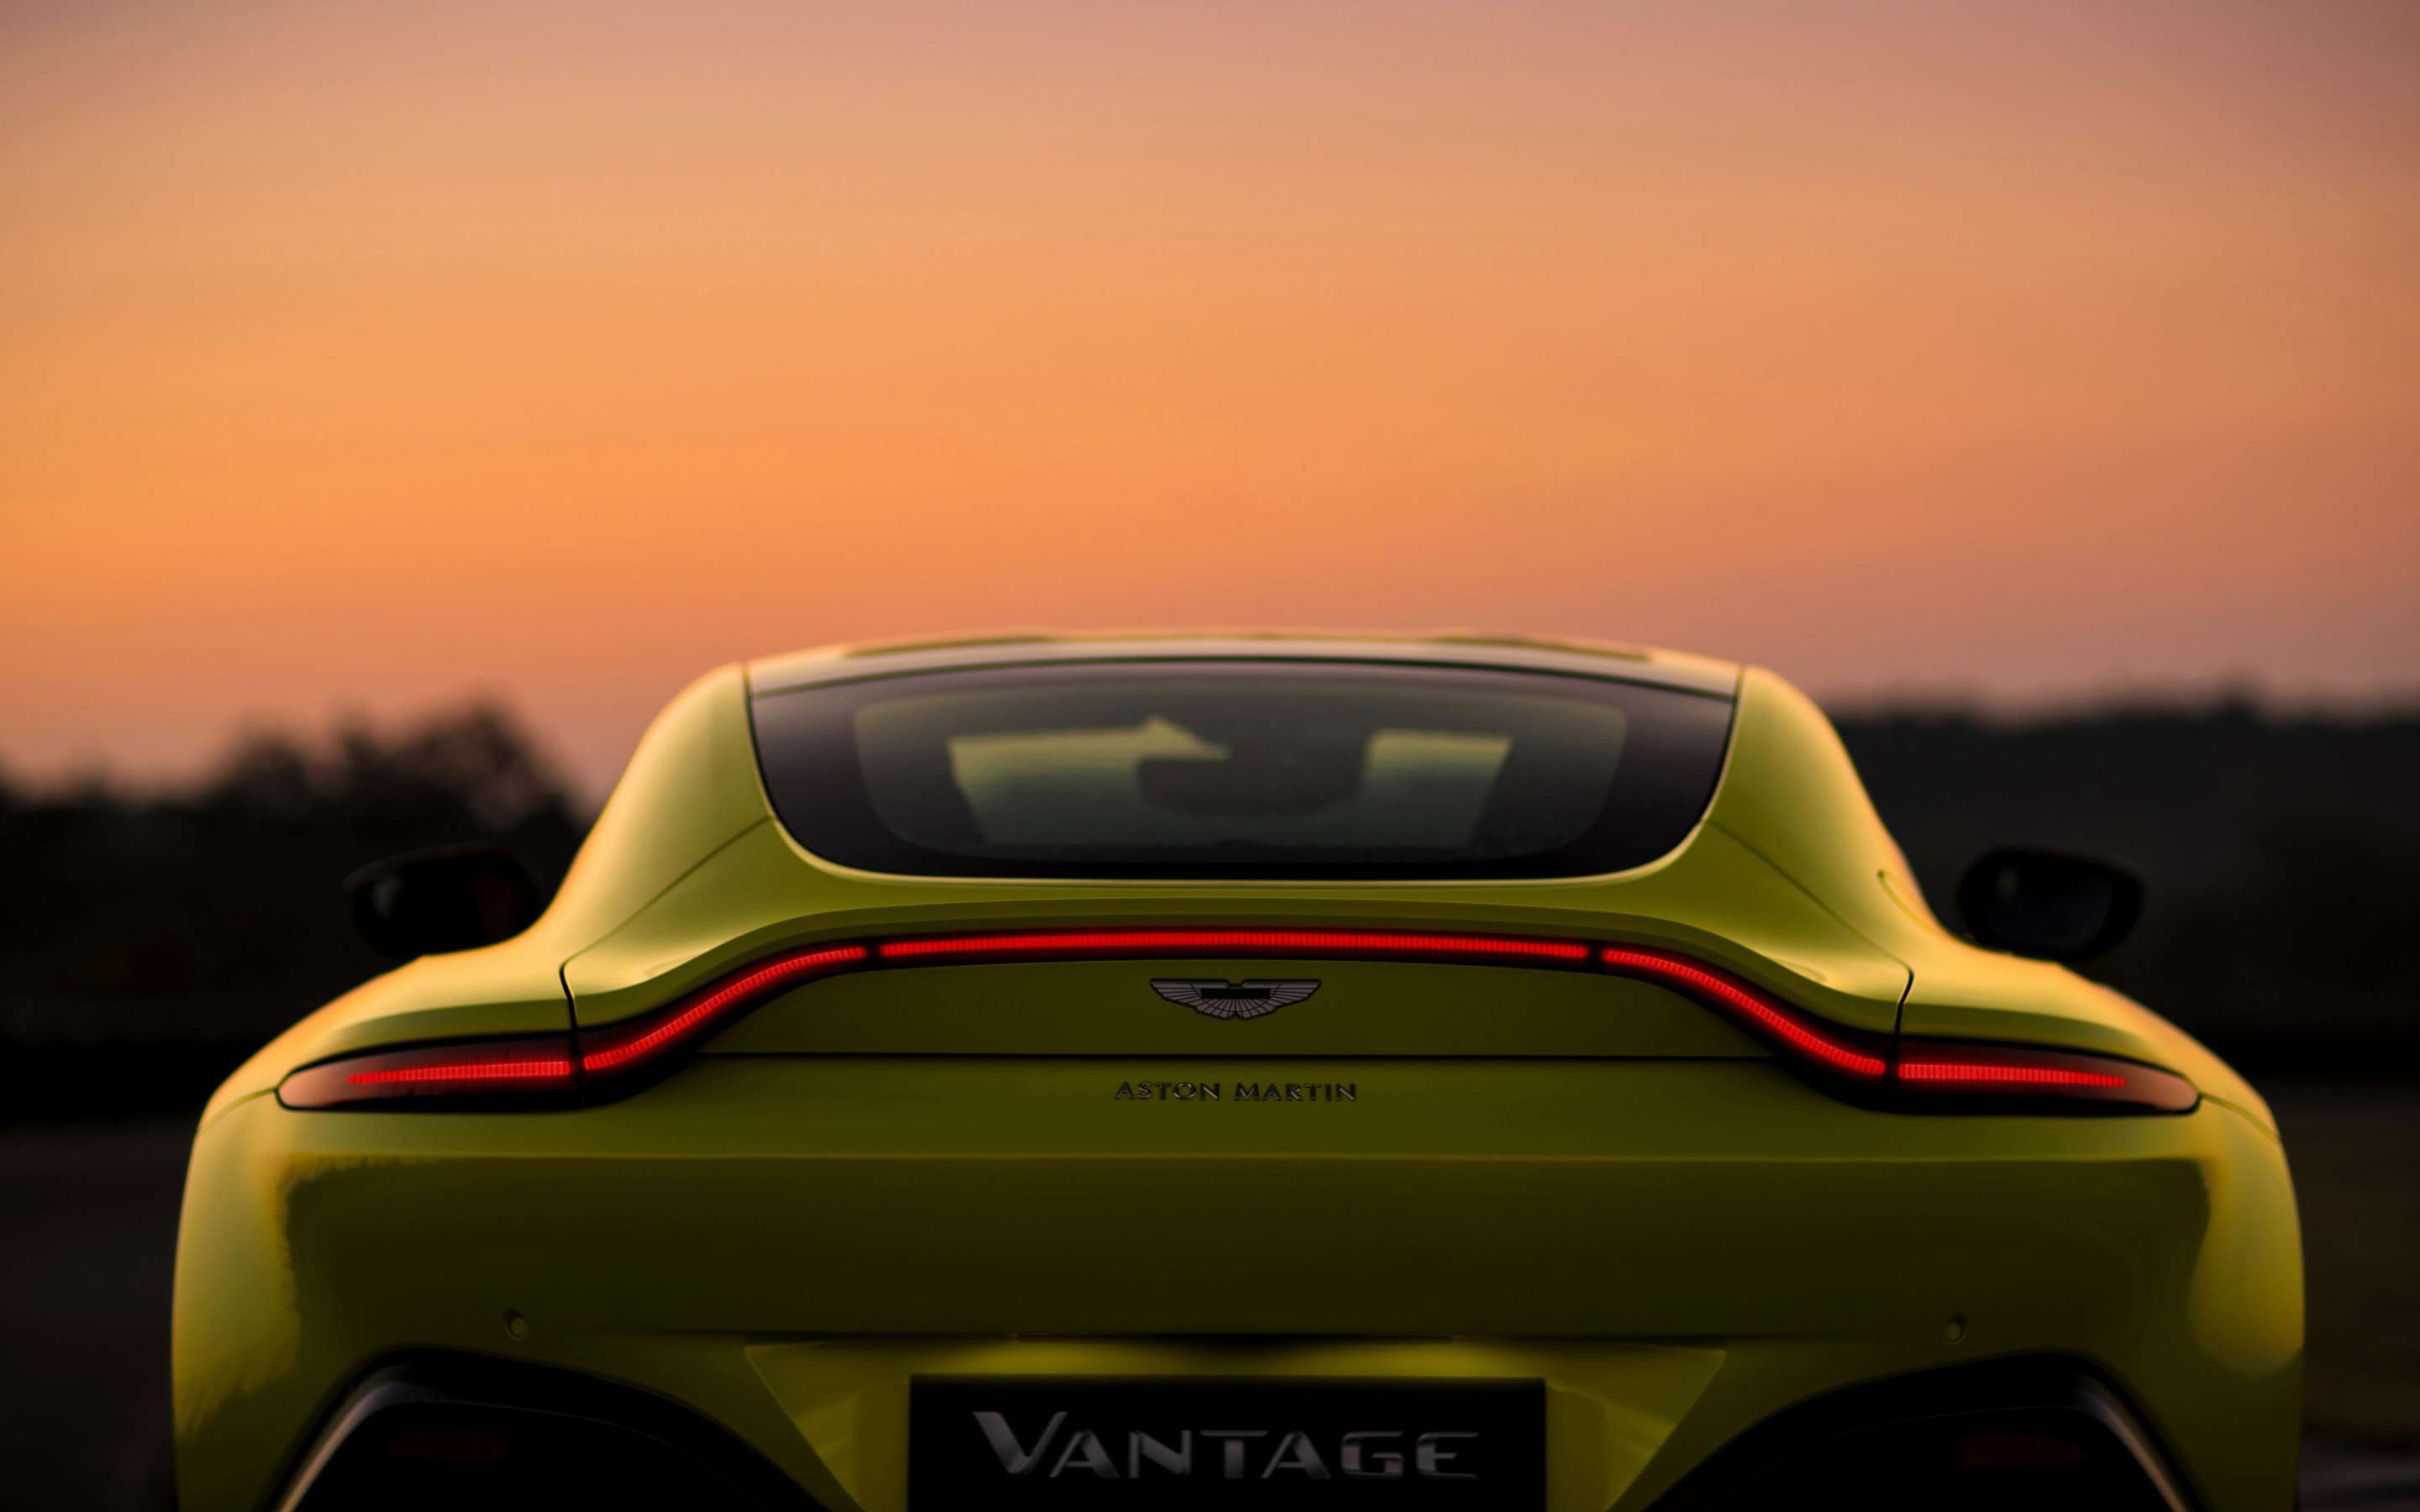 Aston Martin V8 Vantage, 2018 car, rear, 2880x1800 wallpaper